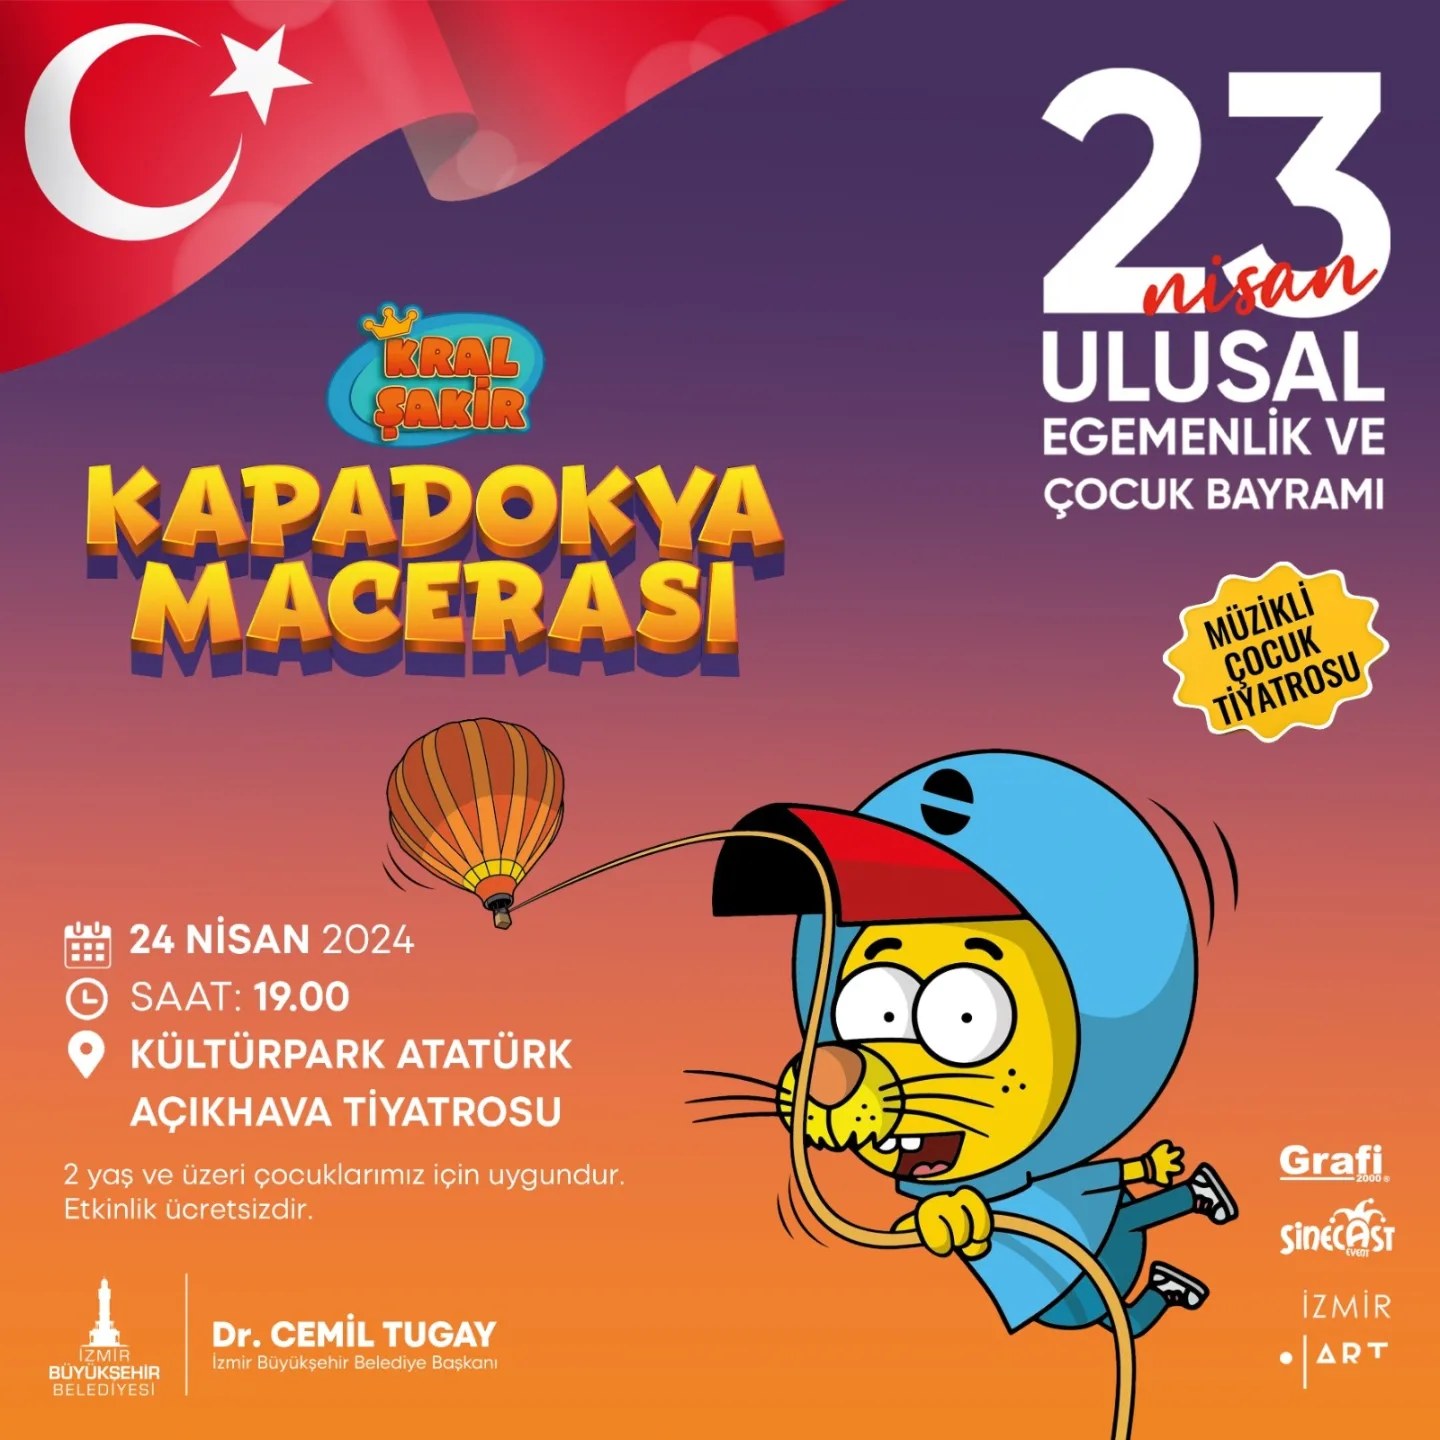 İzmir'de 23 Nisan'da Kral Şakir Kapadokya Macerası ve Maşa ile Koca Ayı müzikalleriyle çocuklar eğlenceye doyacak.